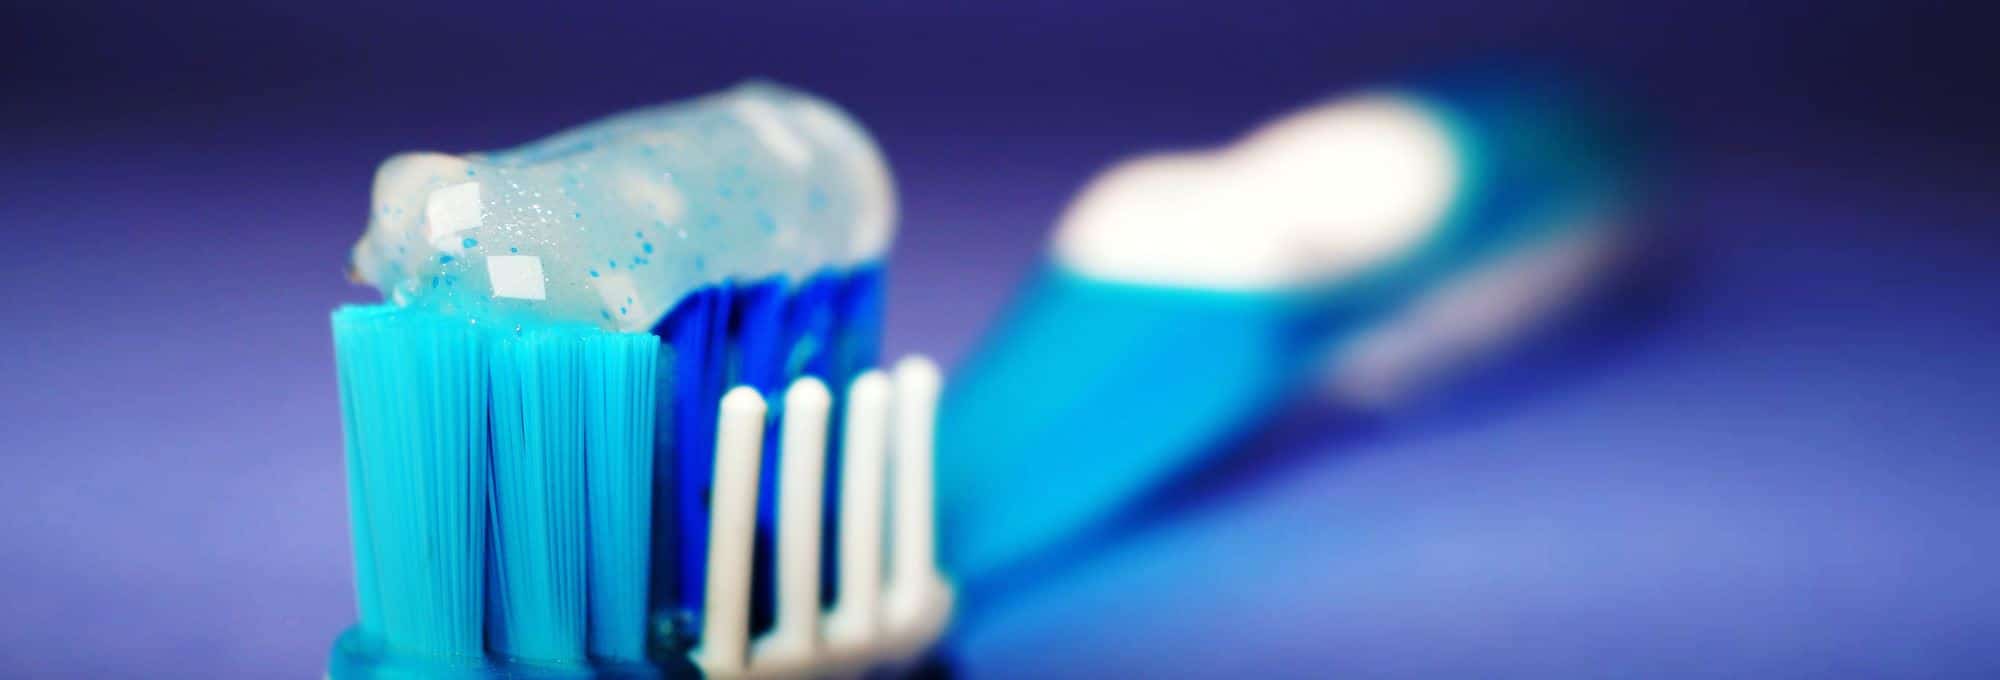 Come si lavano i denti? Ecco i consigli di Brush per un’igiene orale efficace!